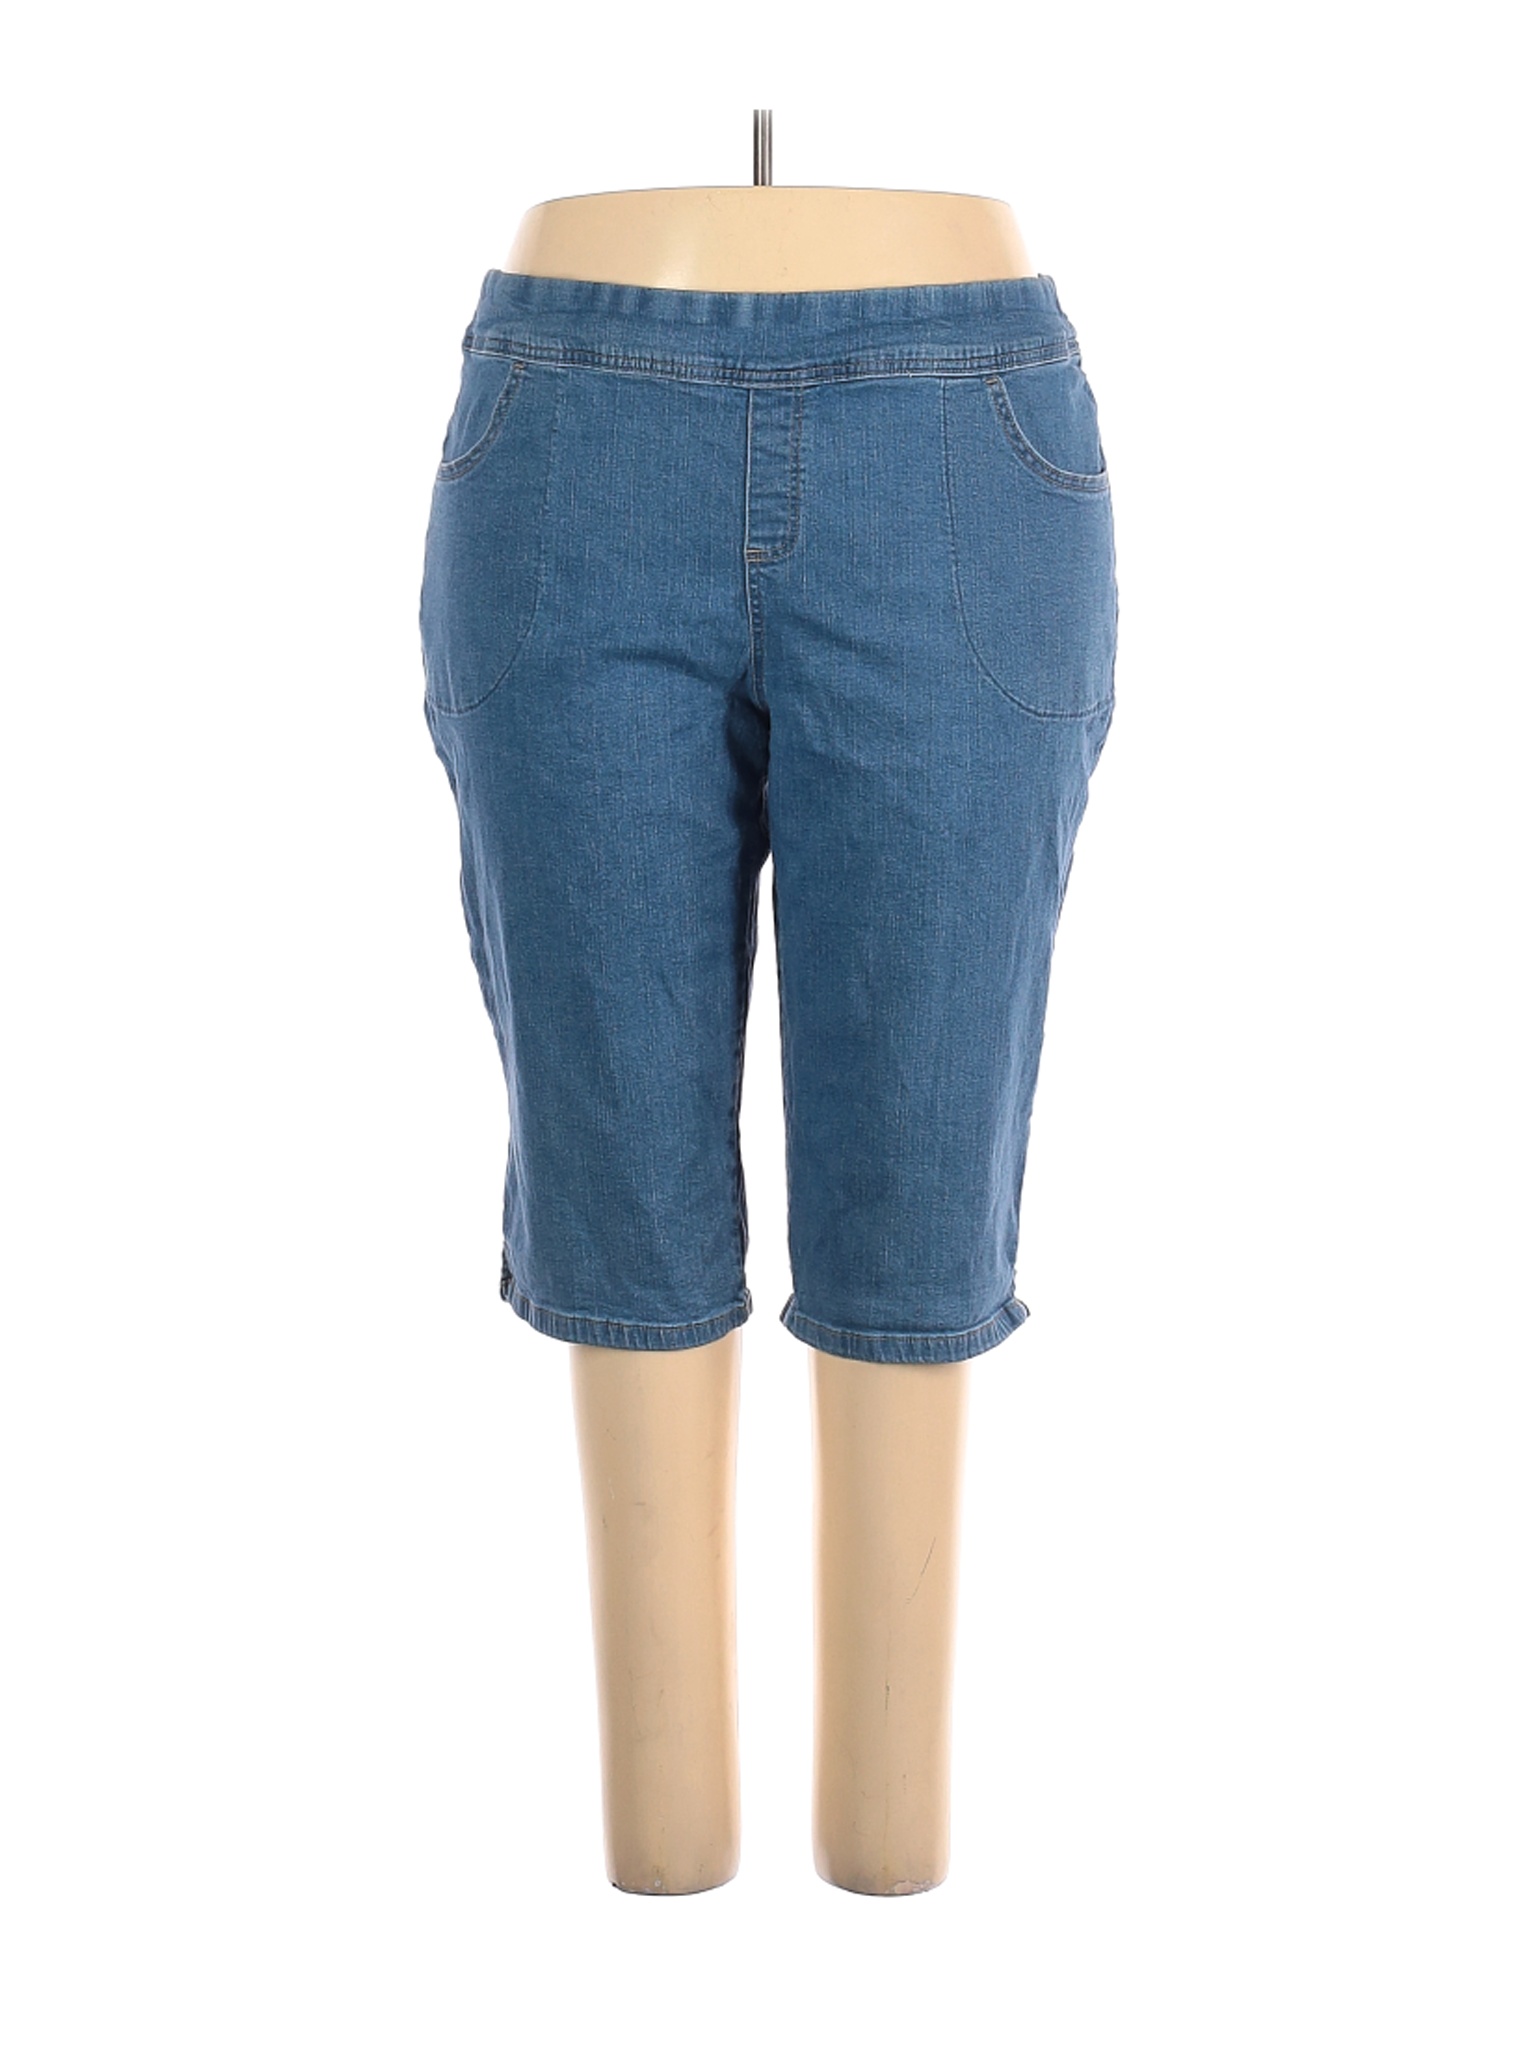 Terra & Sky Women Blue Jeans 2X Plus | eBay